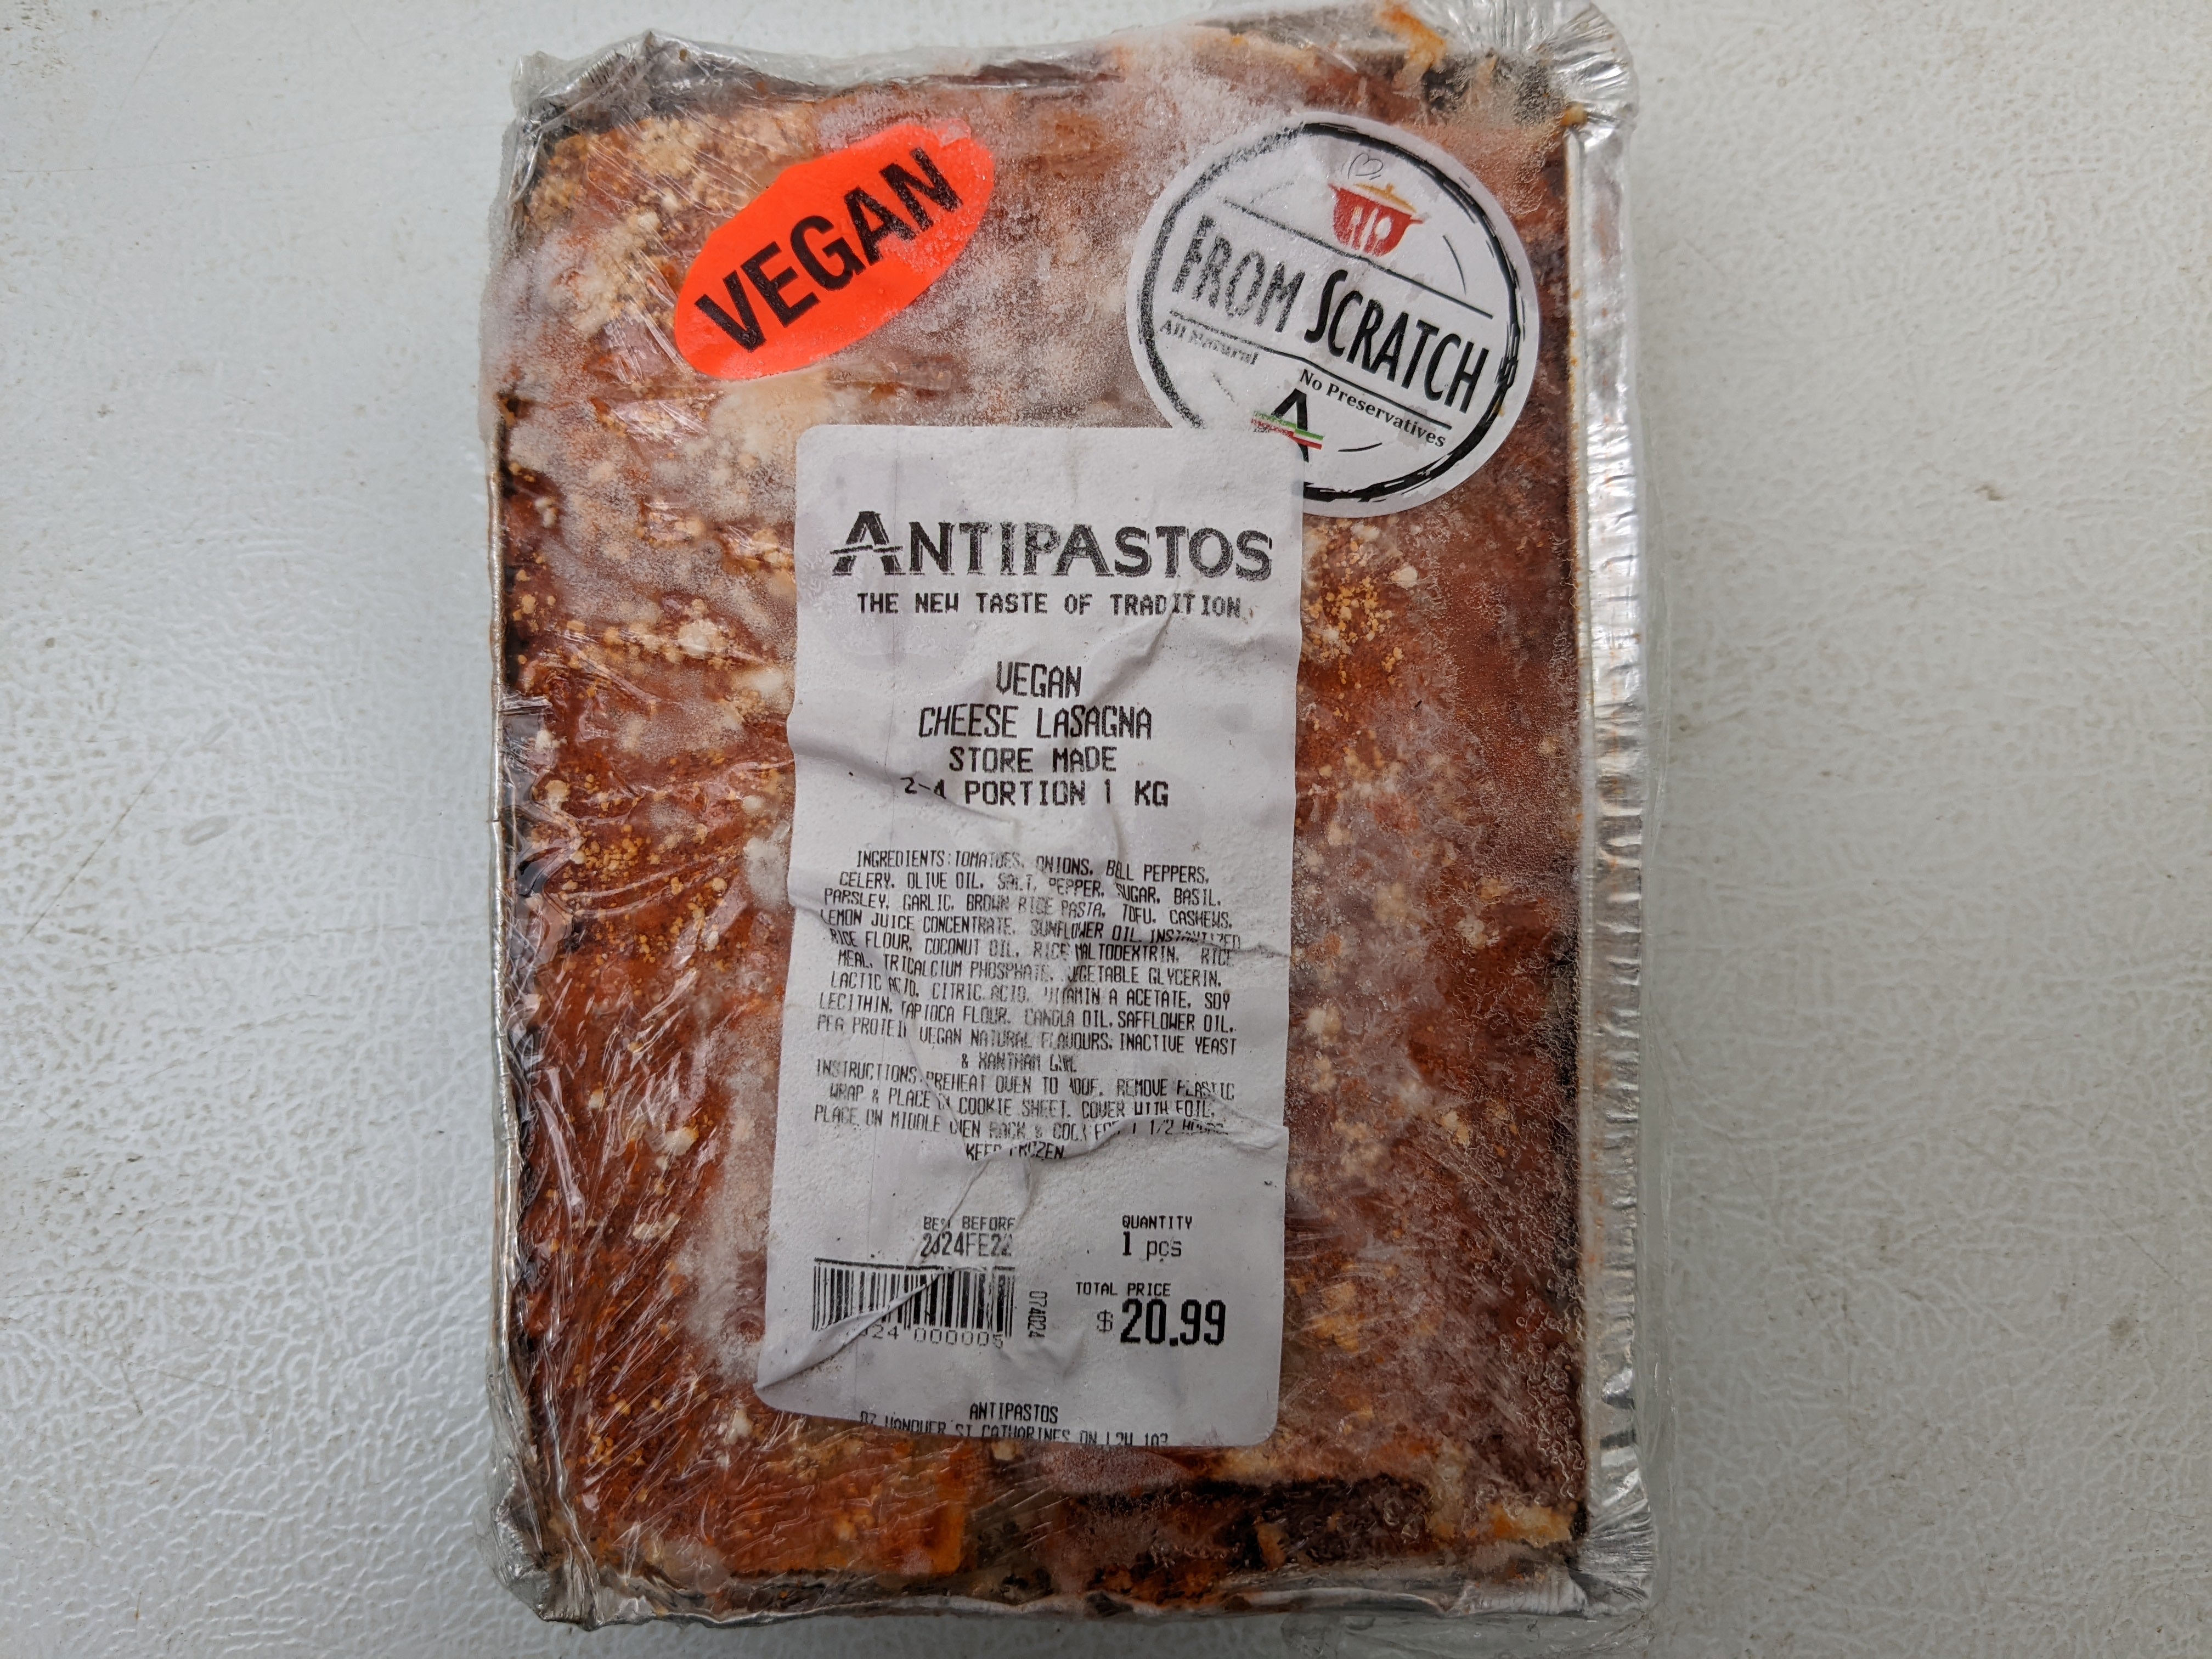 Vegan Cheese Lasagna 1KG - Antipastos